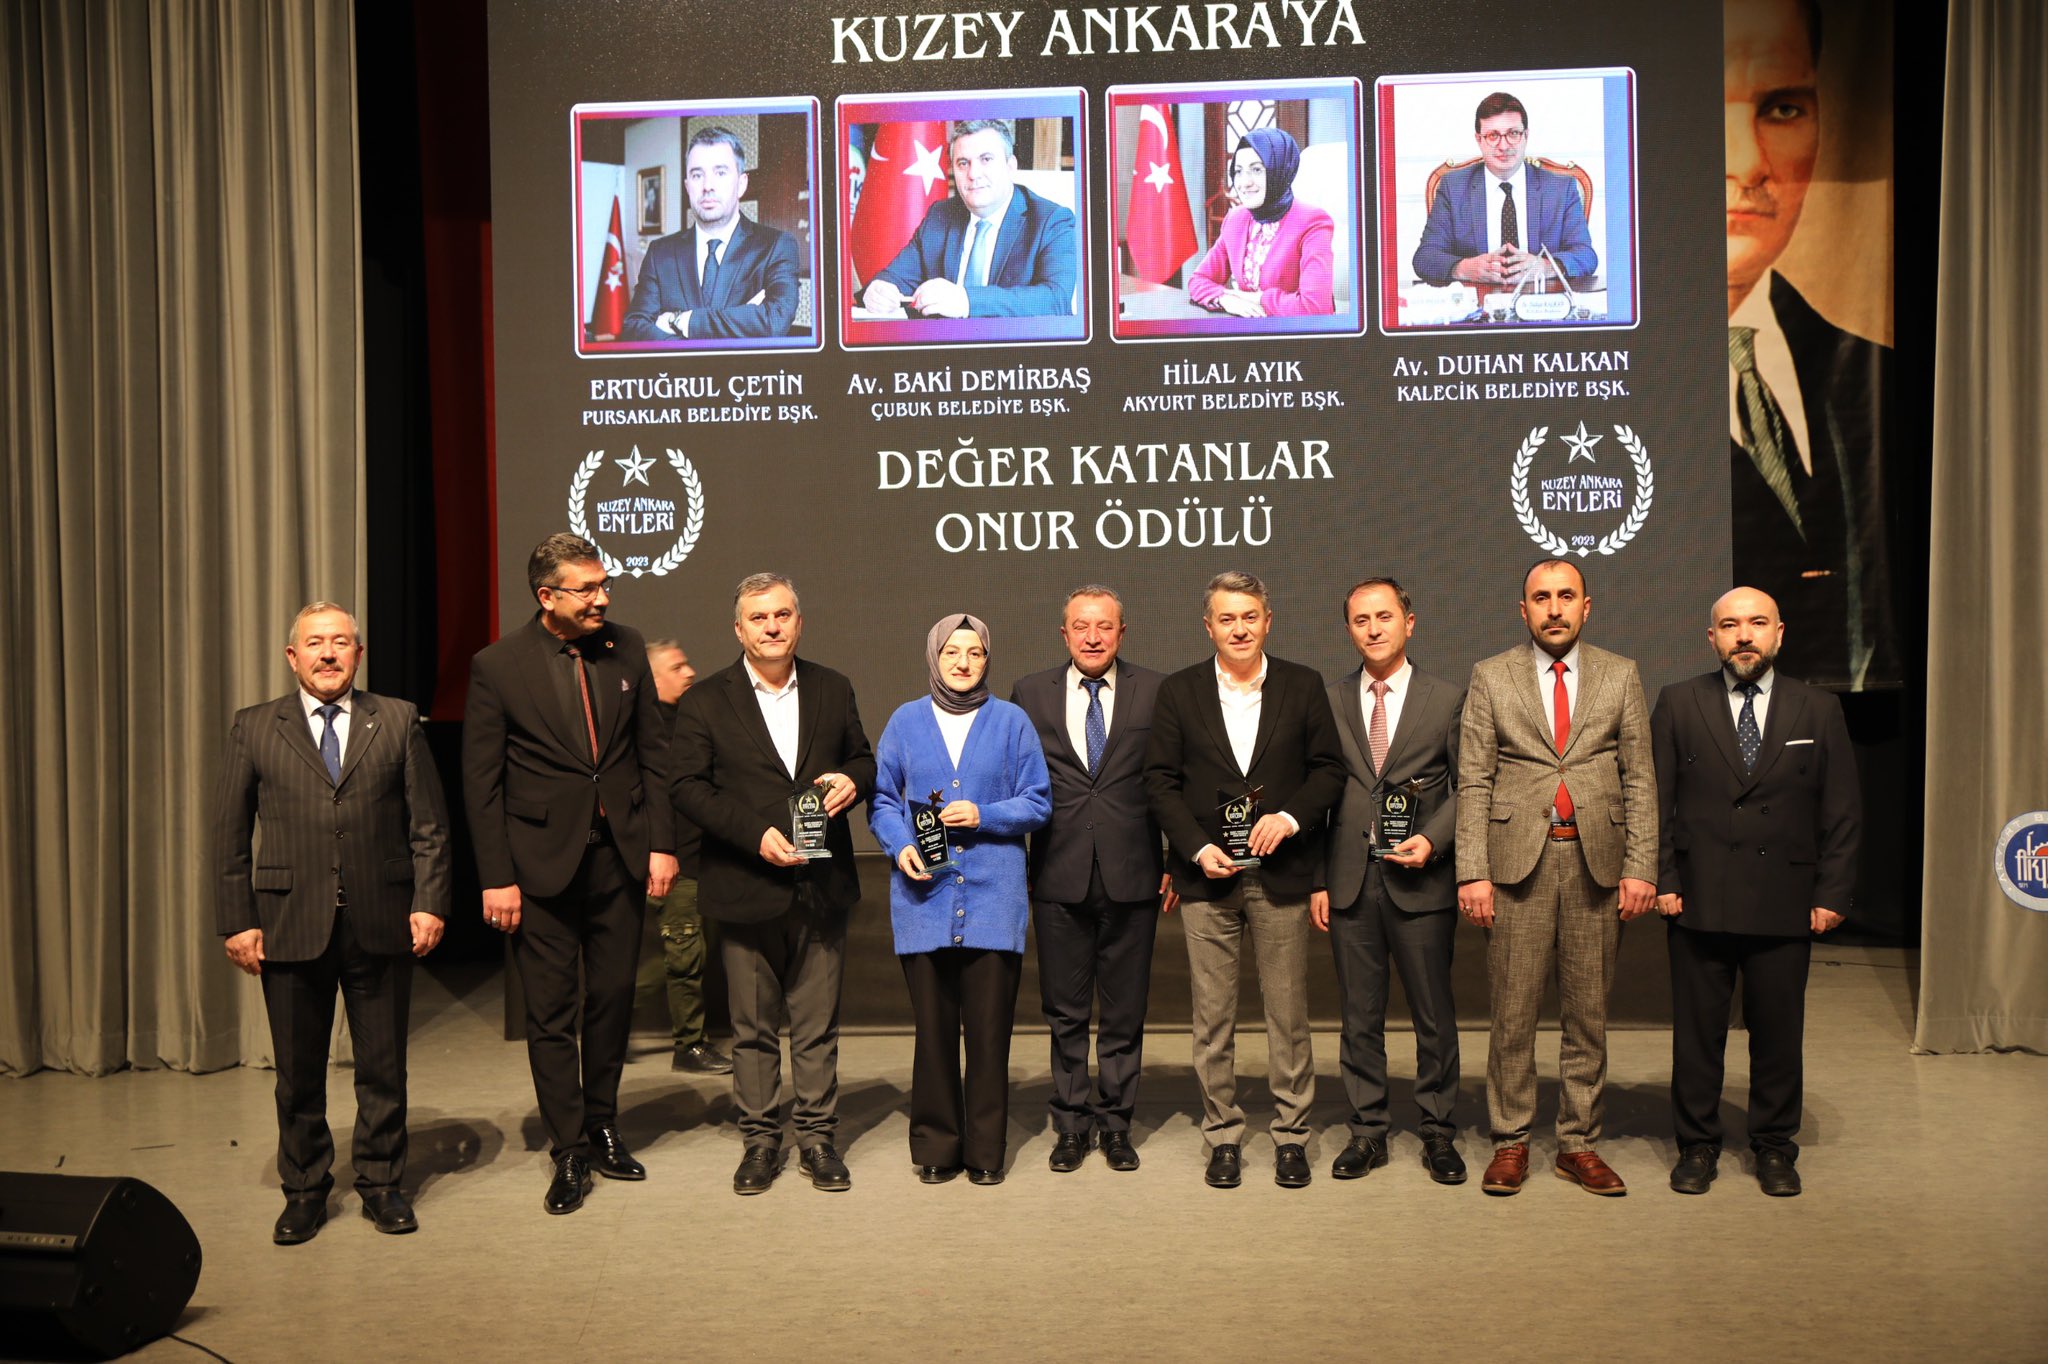 Başkan Demirbaş, 2. Kuzey Ankara Ödülüne Layık Görüldü 2